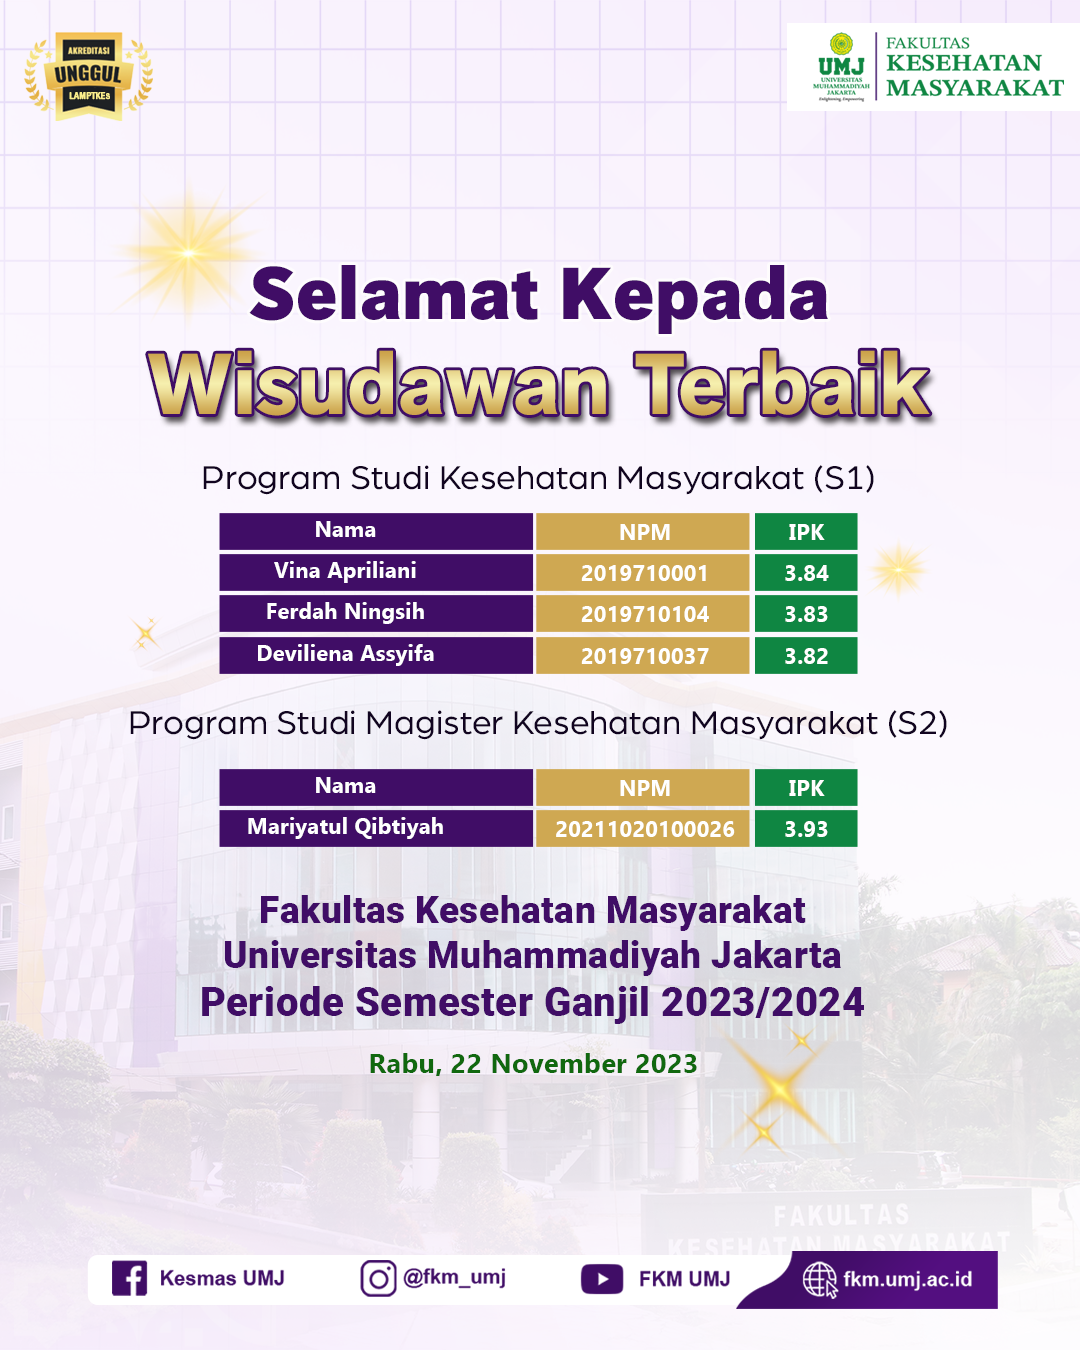 Selamat dan Sukses Kepada Wisudawan Terbaik yang Ke 68! Fakultas Kesehatan Masyarakat Universitas Muhammadiyah Jakarta